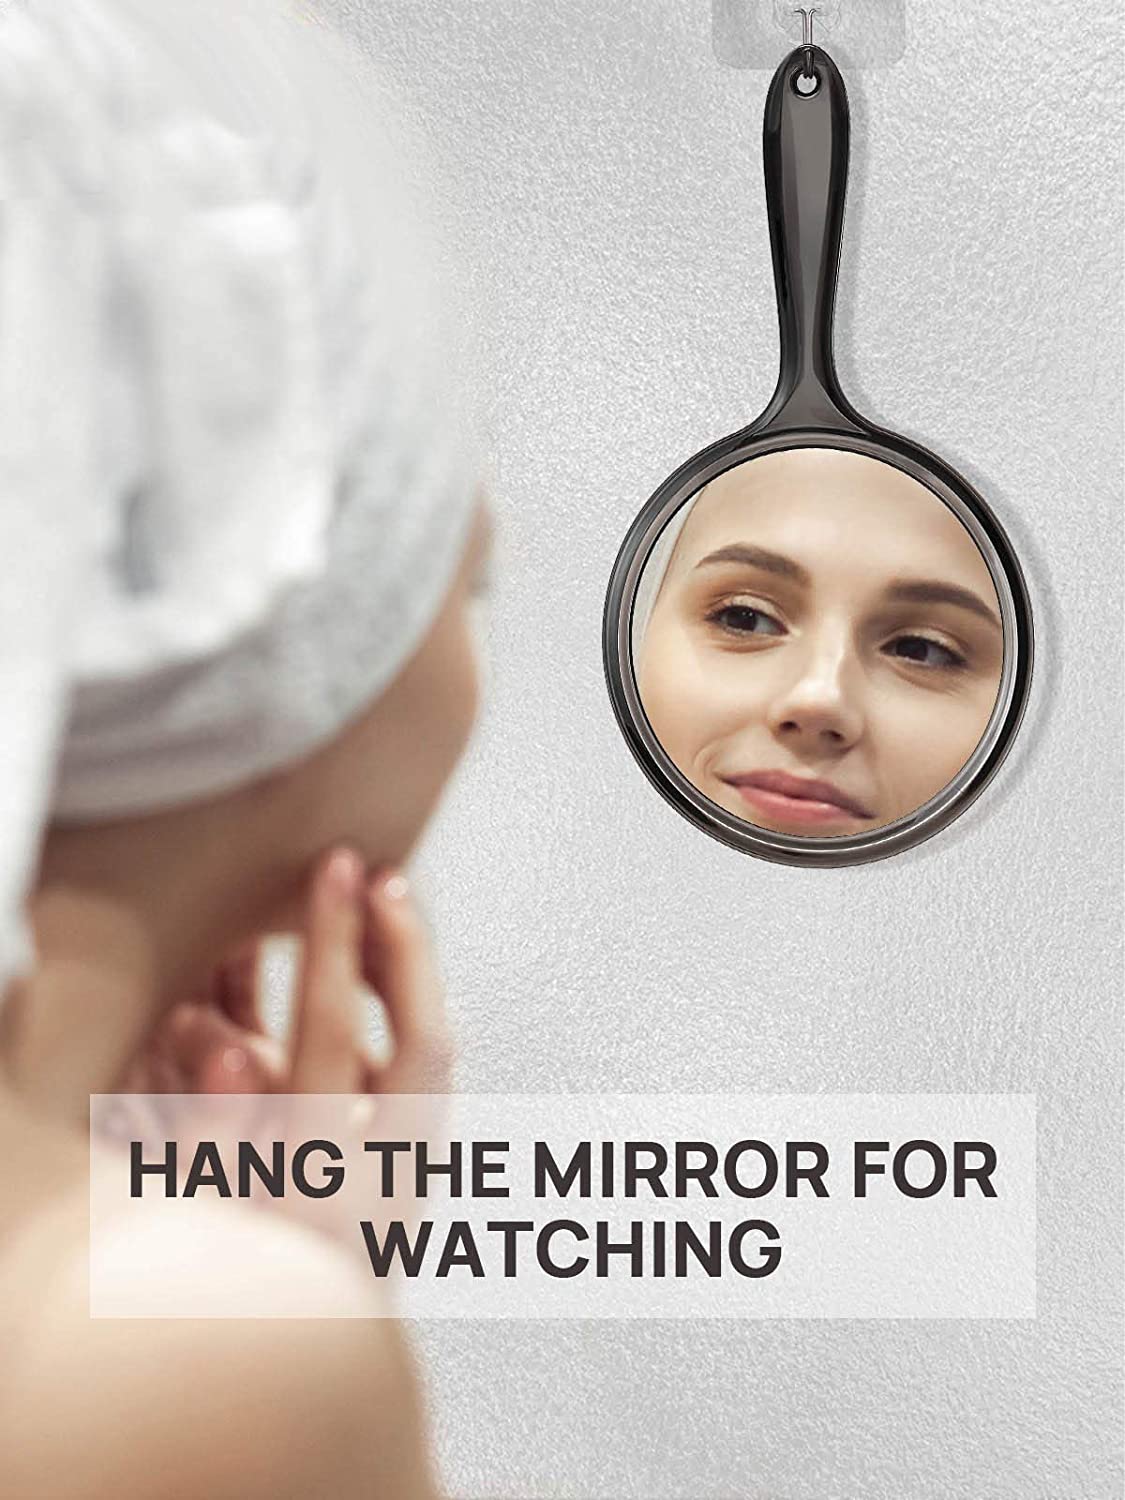 Miroir à main OMIRO, miroir à main double face miroir grossissant 1X/3X avec poignée, lot de 2 (noir transparent)